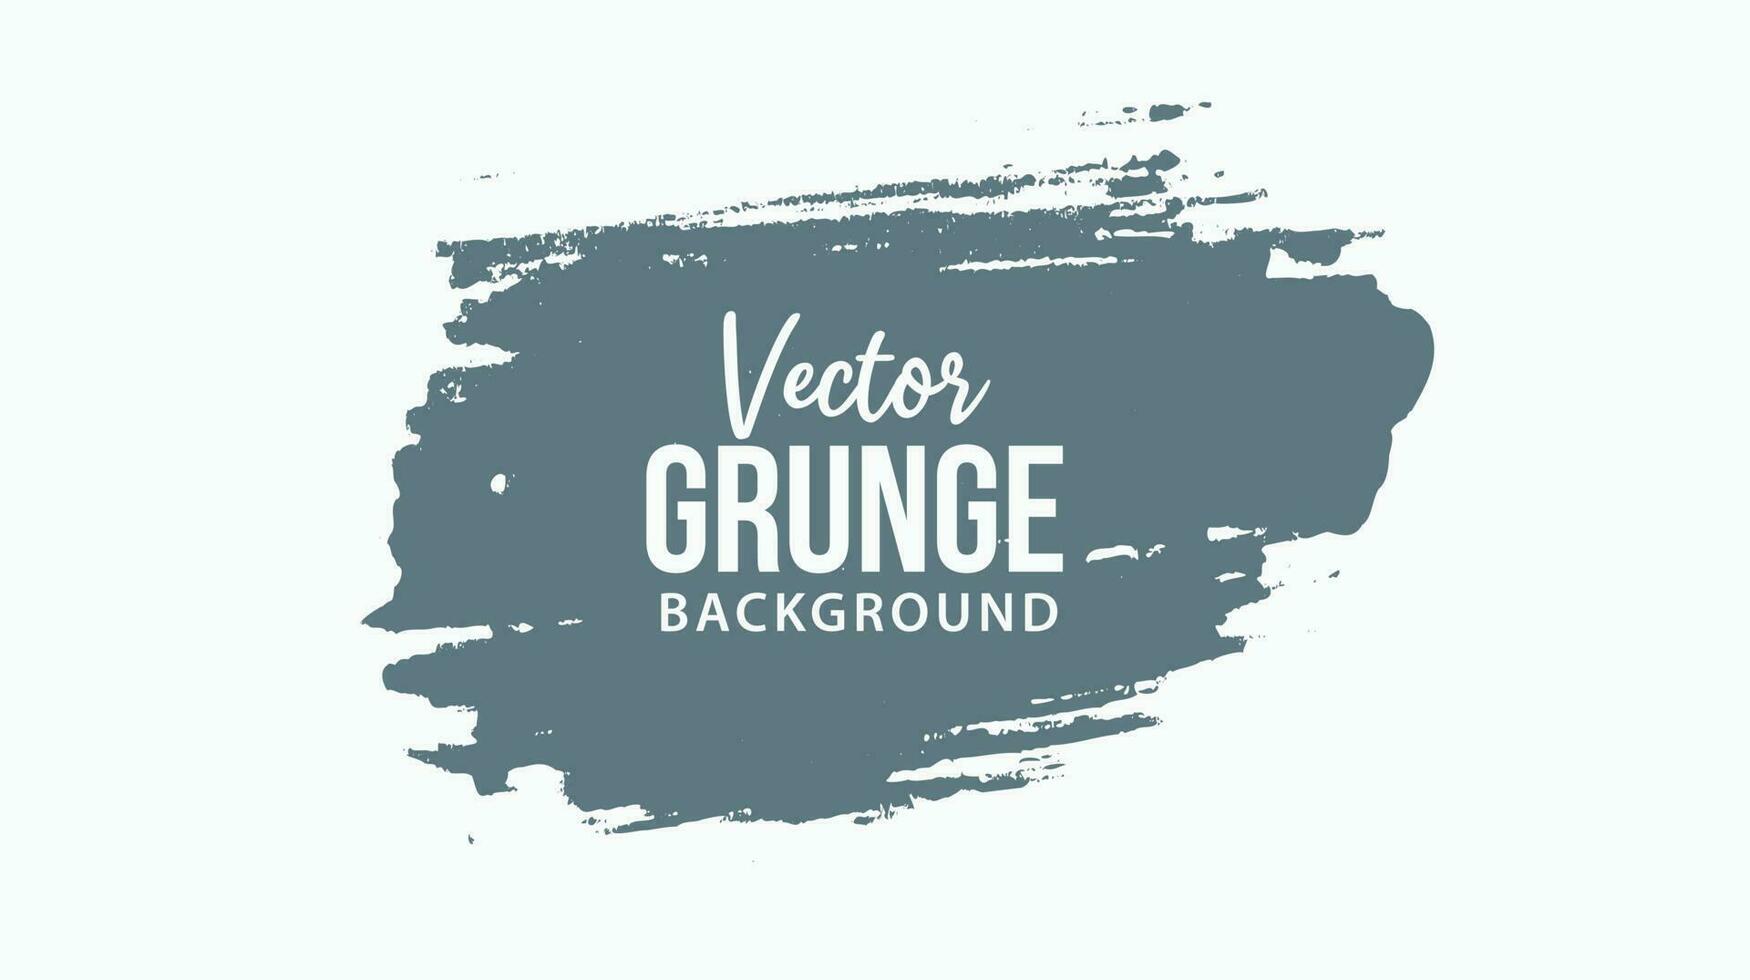 Grunge brush strokes vector